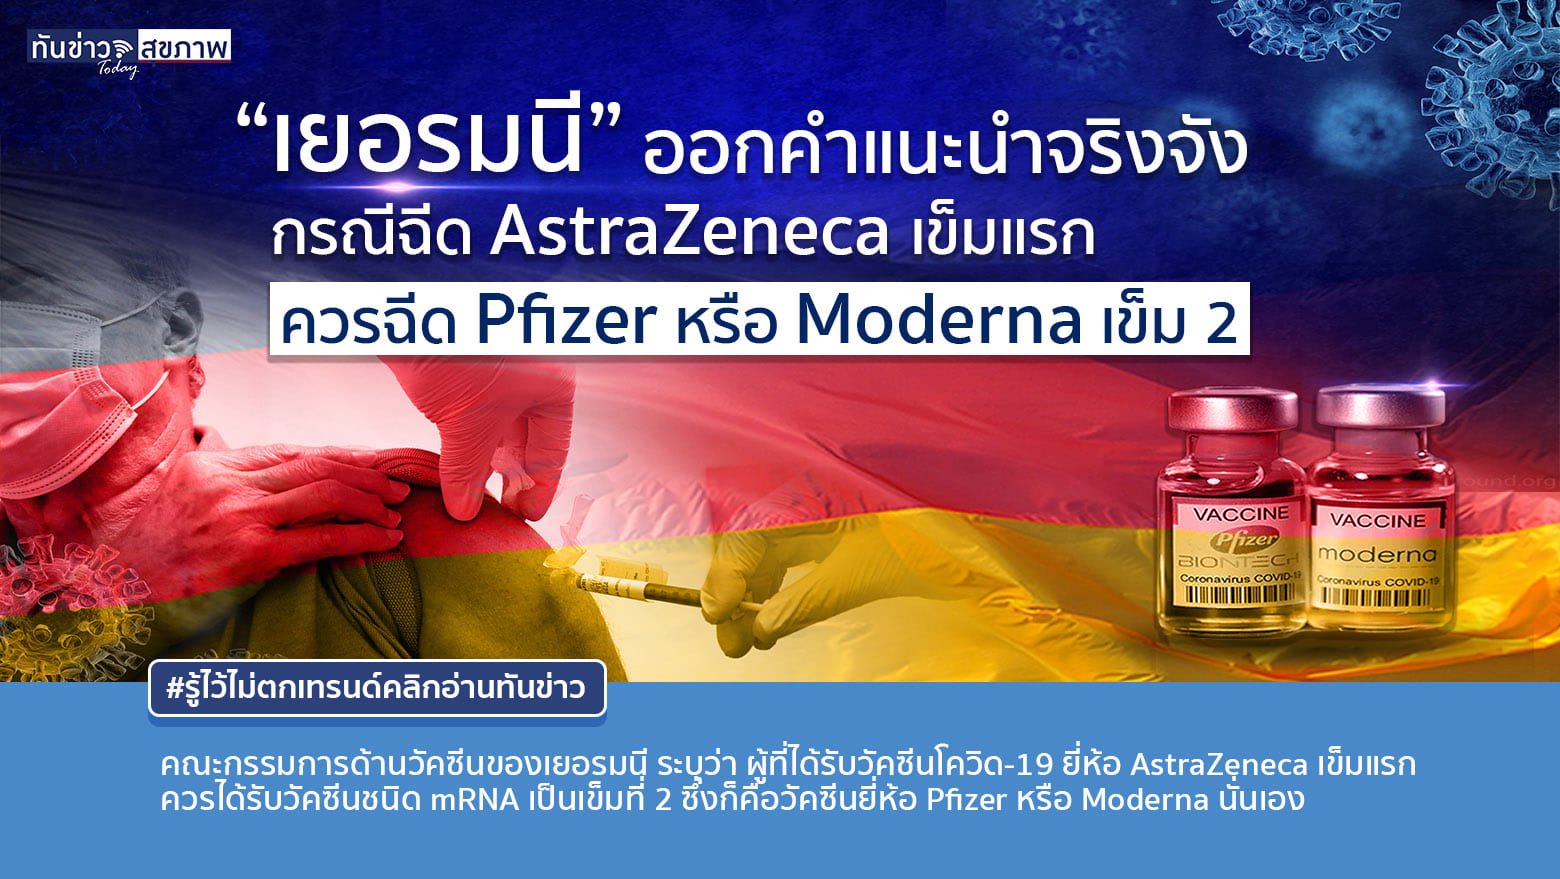 “เยอรมนี” แนะกรณีฉีด AstraZeneca เข็มแรก  ควรฉีด Pfizer หรือ Moderna เข็ม 2